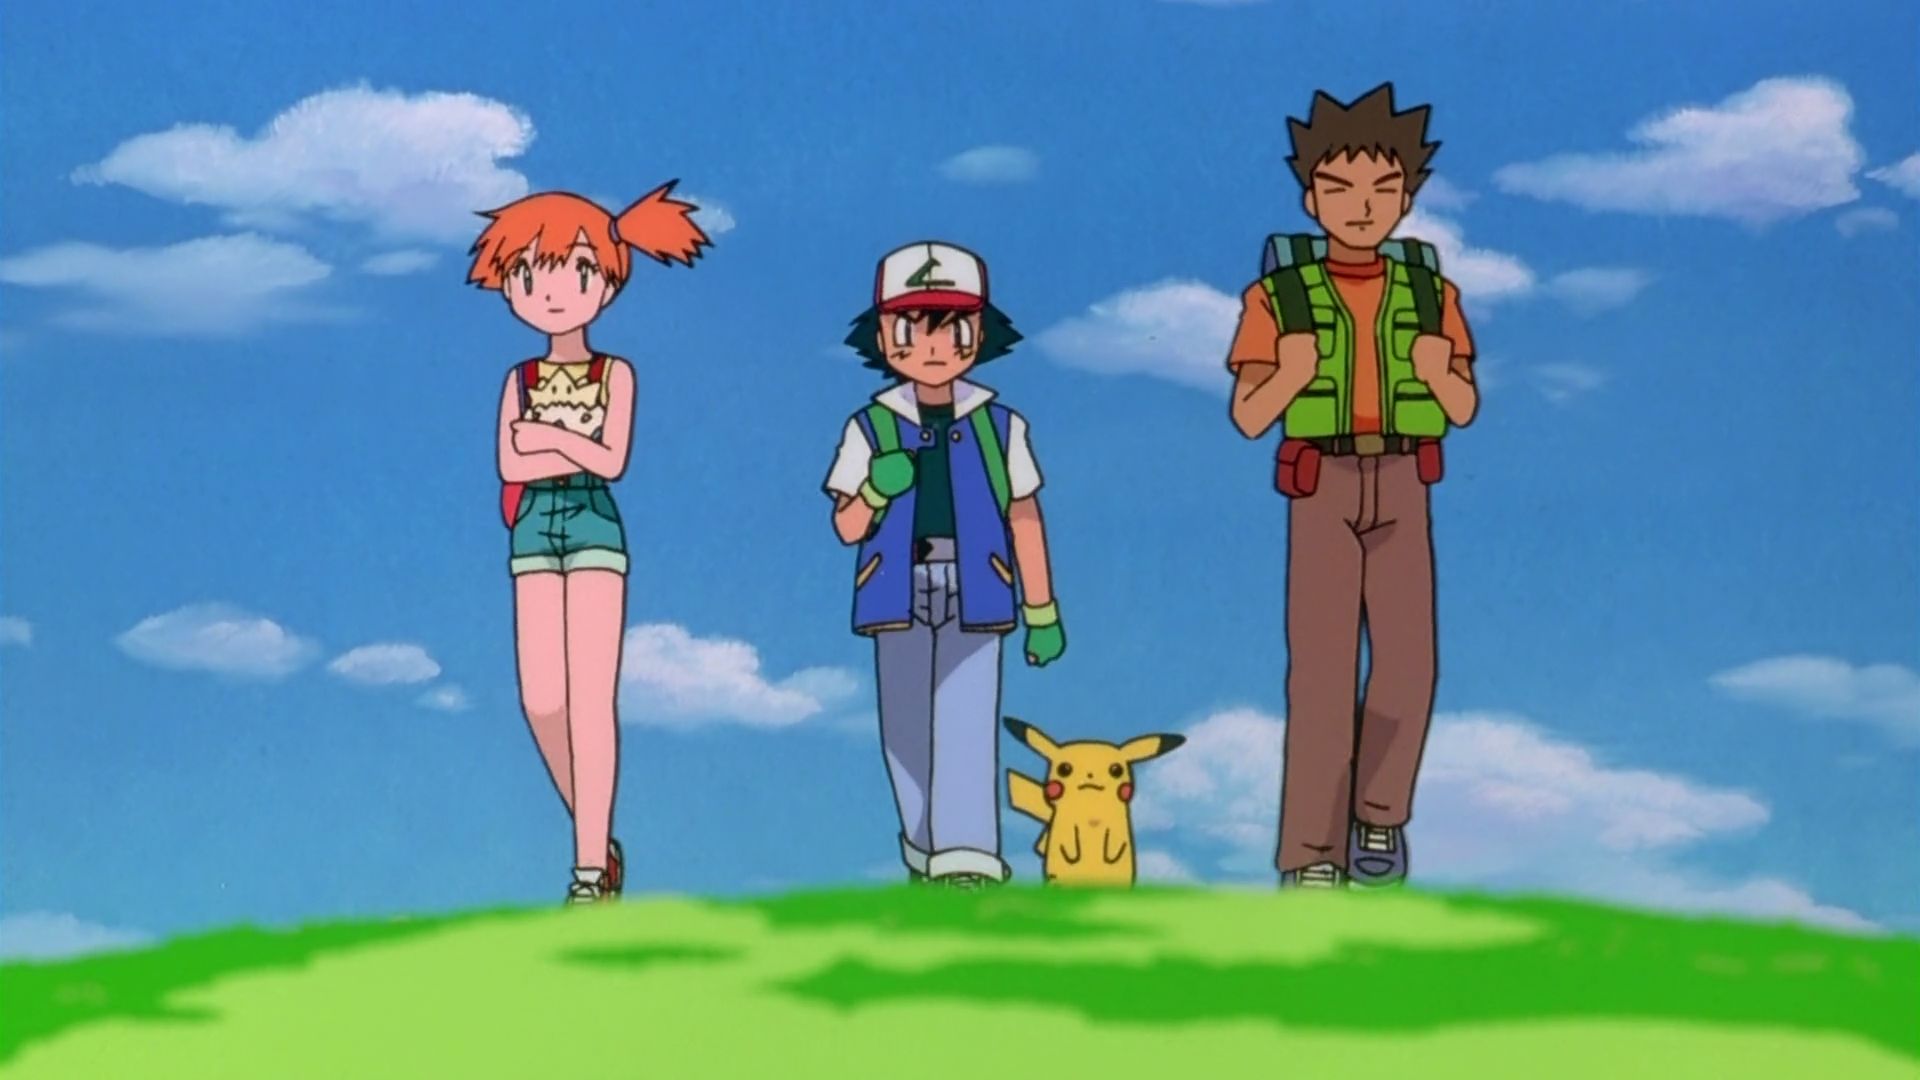 pikachu, anime, pokemon 4ever: celebi voice of the forest, ash ketchum, brock (pokémon), misty (pokémon), pokémon